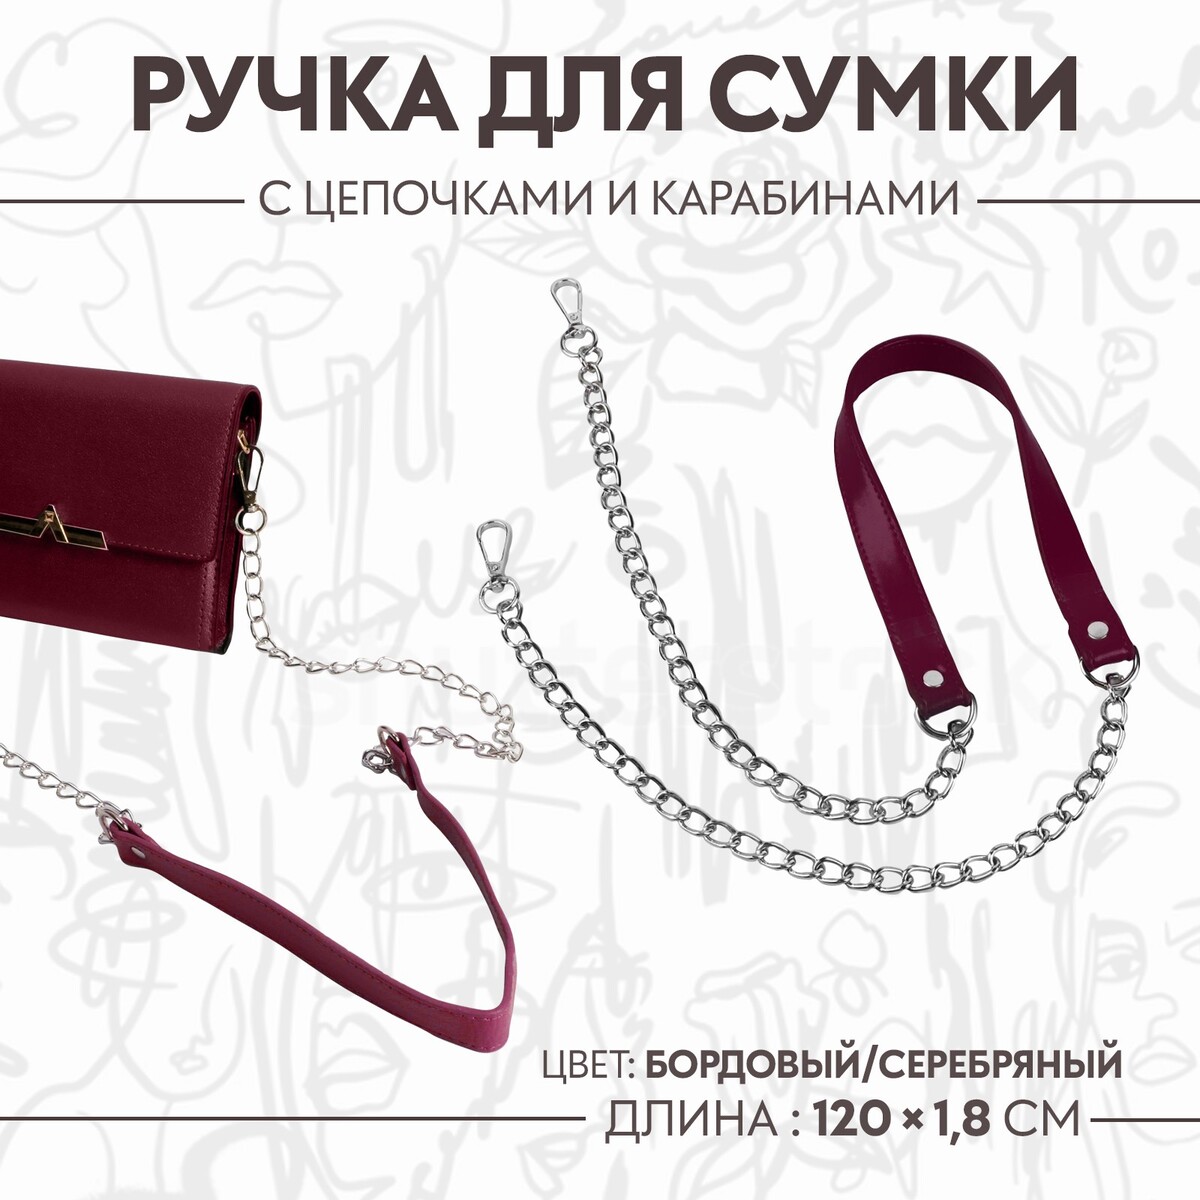 Ручка для сумки, с цепочками и карабинами, 120 × 1,8 см, цвет бордовый ручка для сумки с цепочками и карабинами 120 × 1 8 см